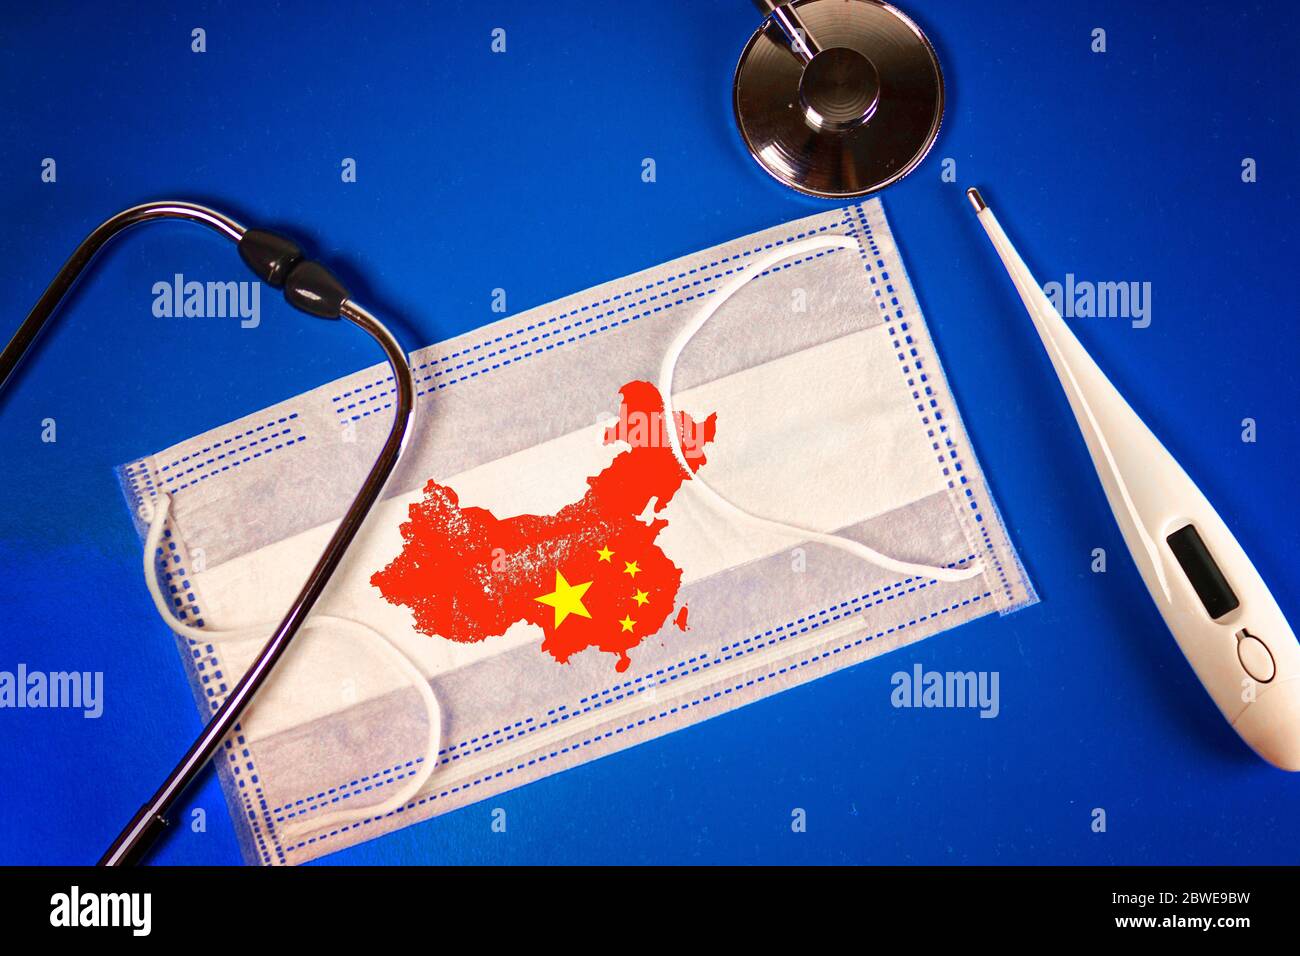 Stetoscopio, termometro e termometro maschera medica con la Repubblica popolare cinese mappa paese silhouette e un timbro: 2019-nCoV, su uno sfondo blu Foto Stock